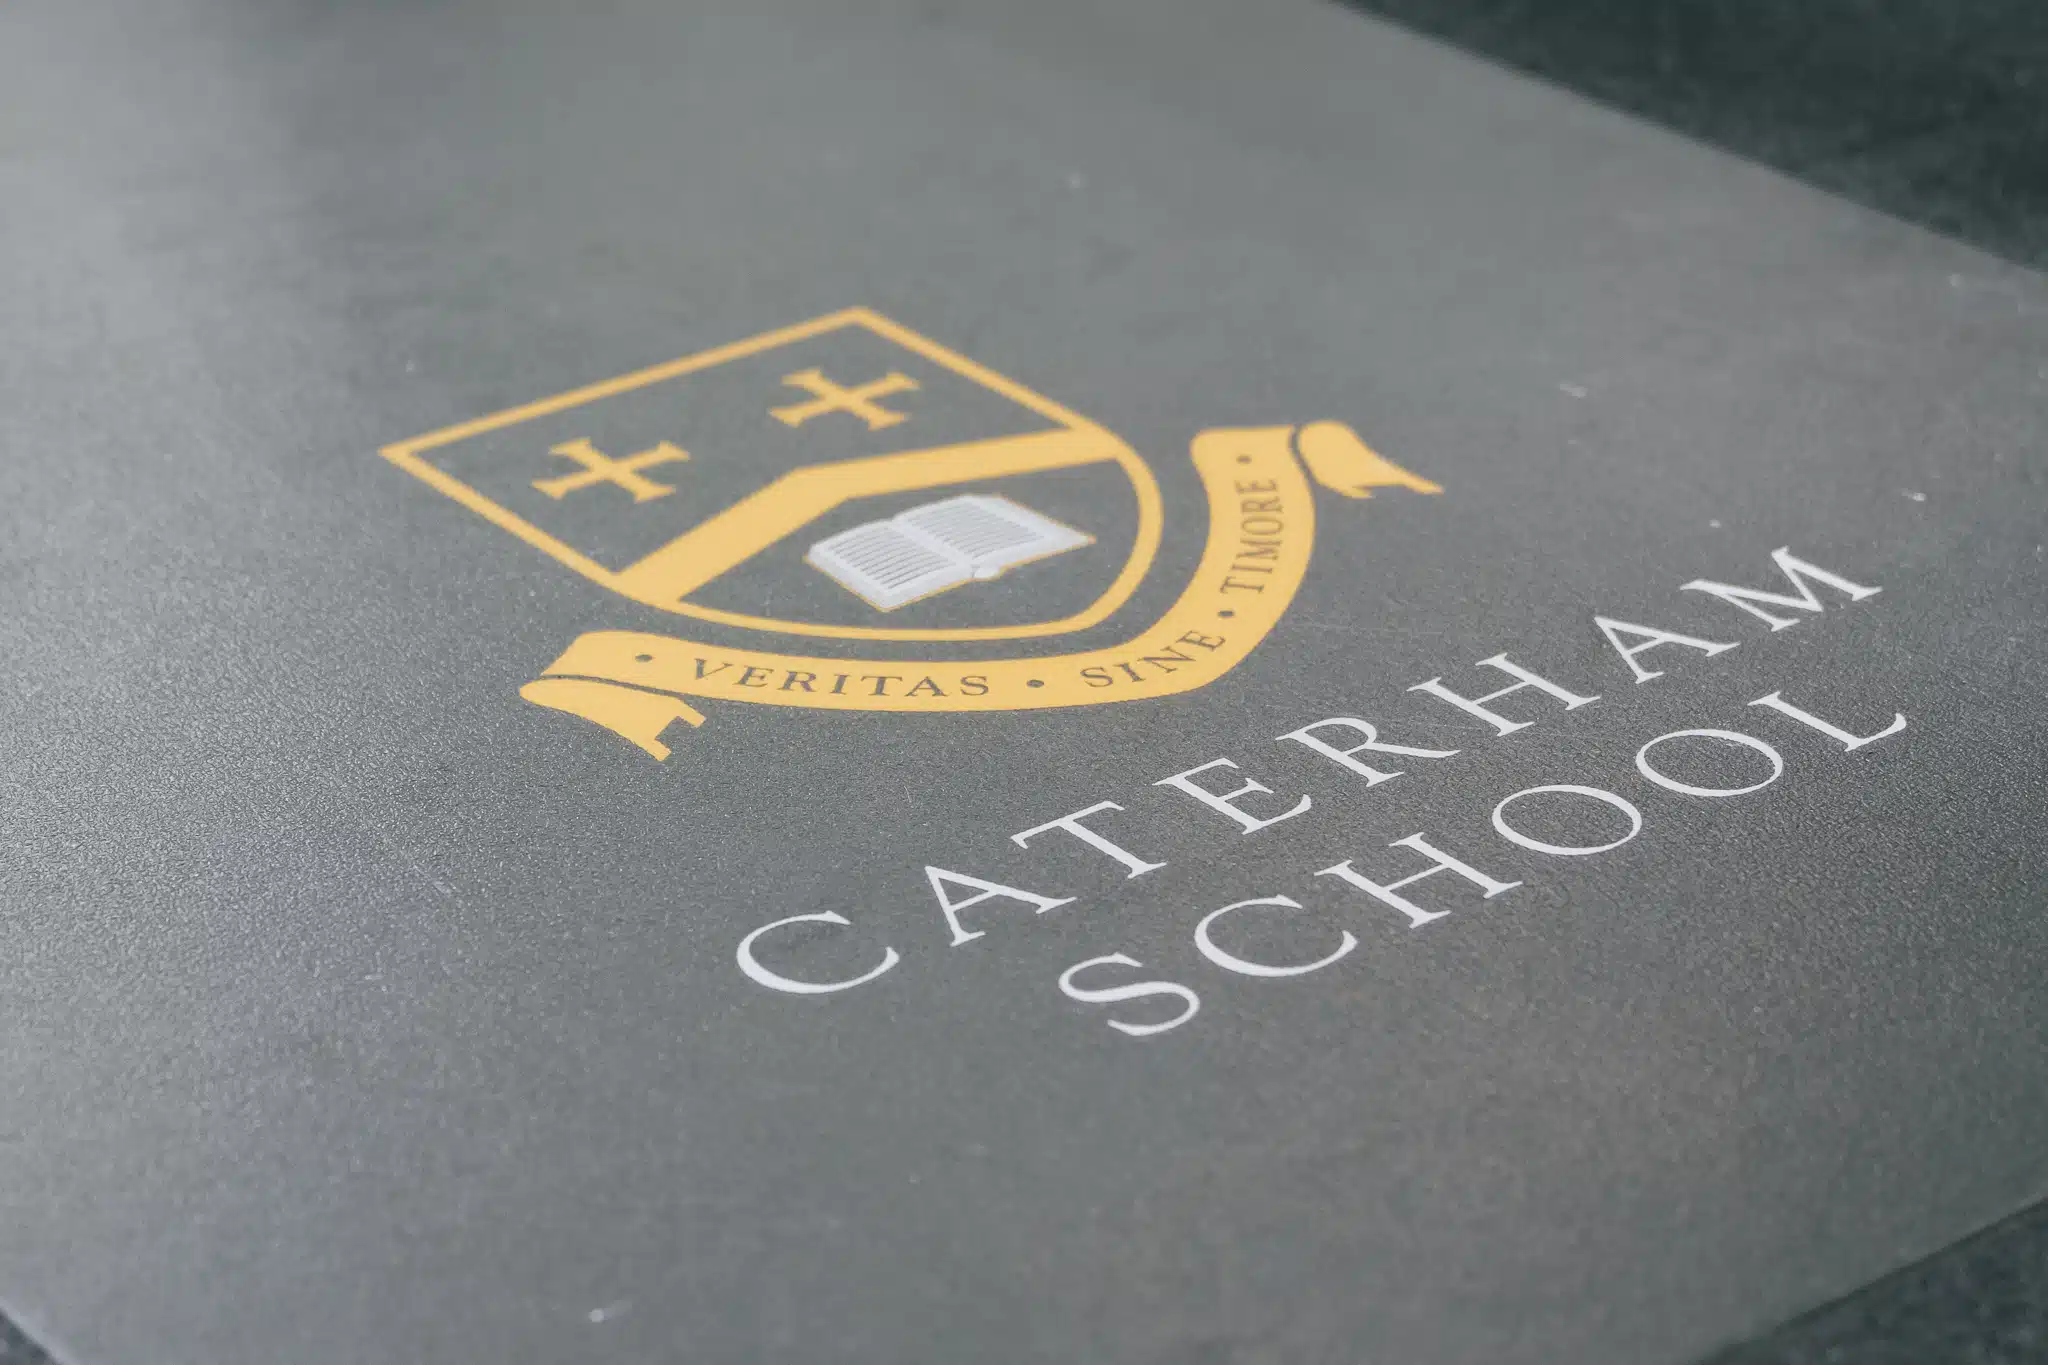 Caterham School 040